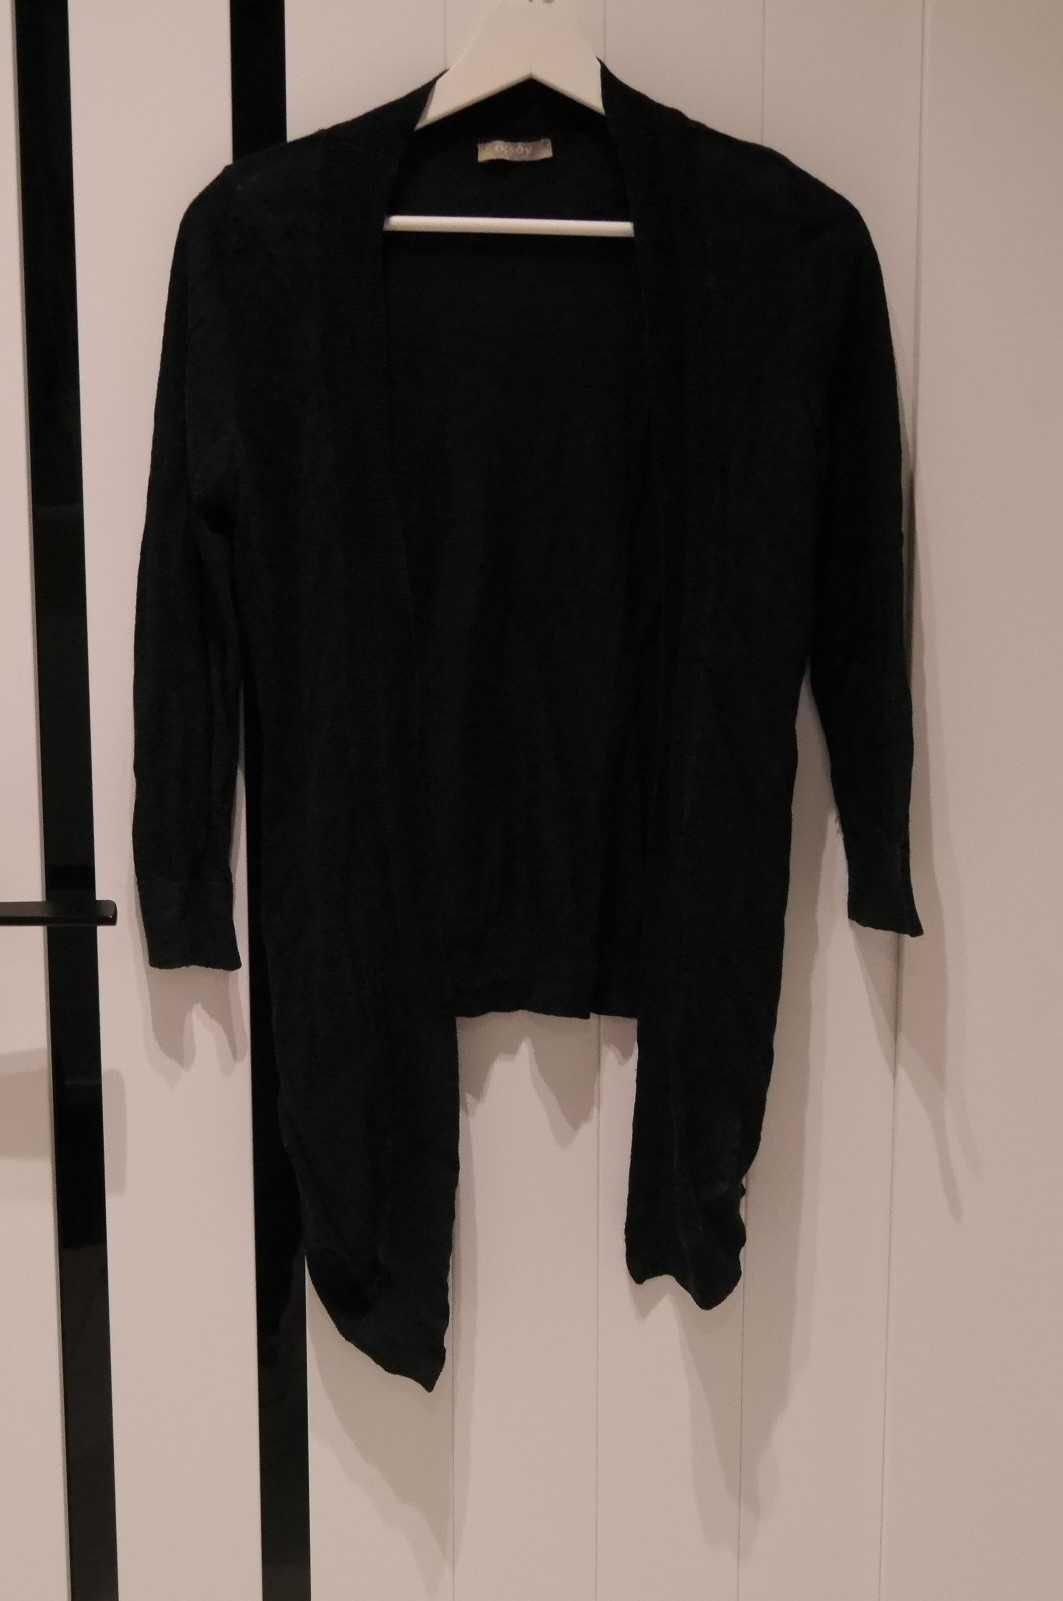 Orsay fajny cienki sweterek długi przód 36 S